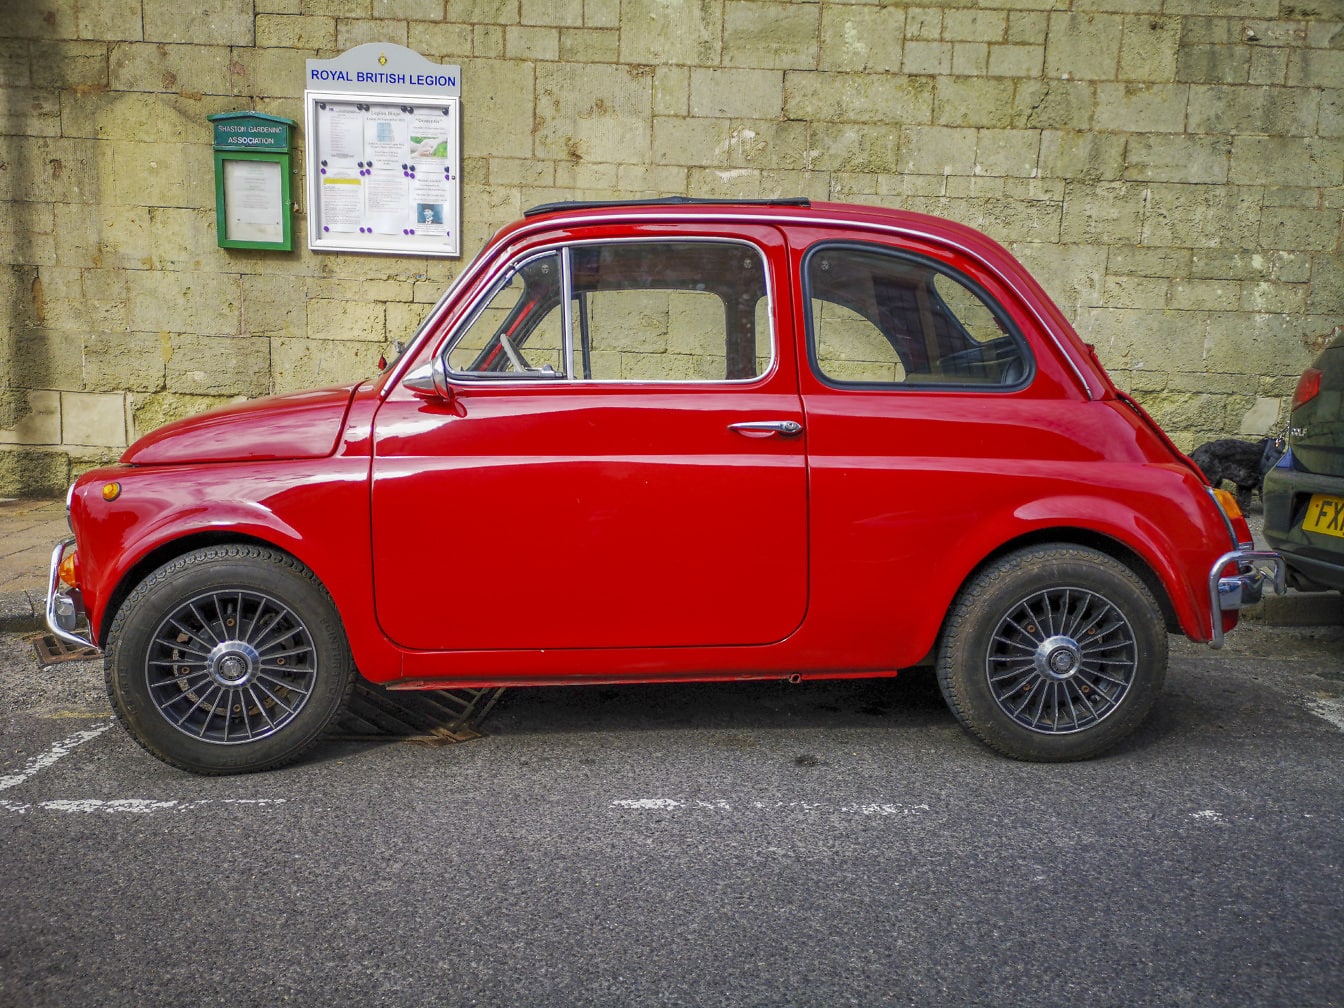 Fiat Nuova 500 темно-красный металлический старожил-автомобиль на парковке